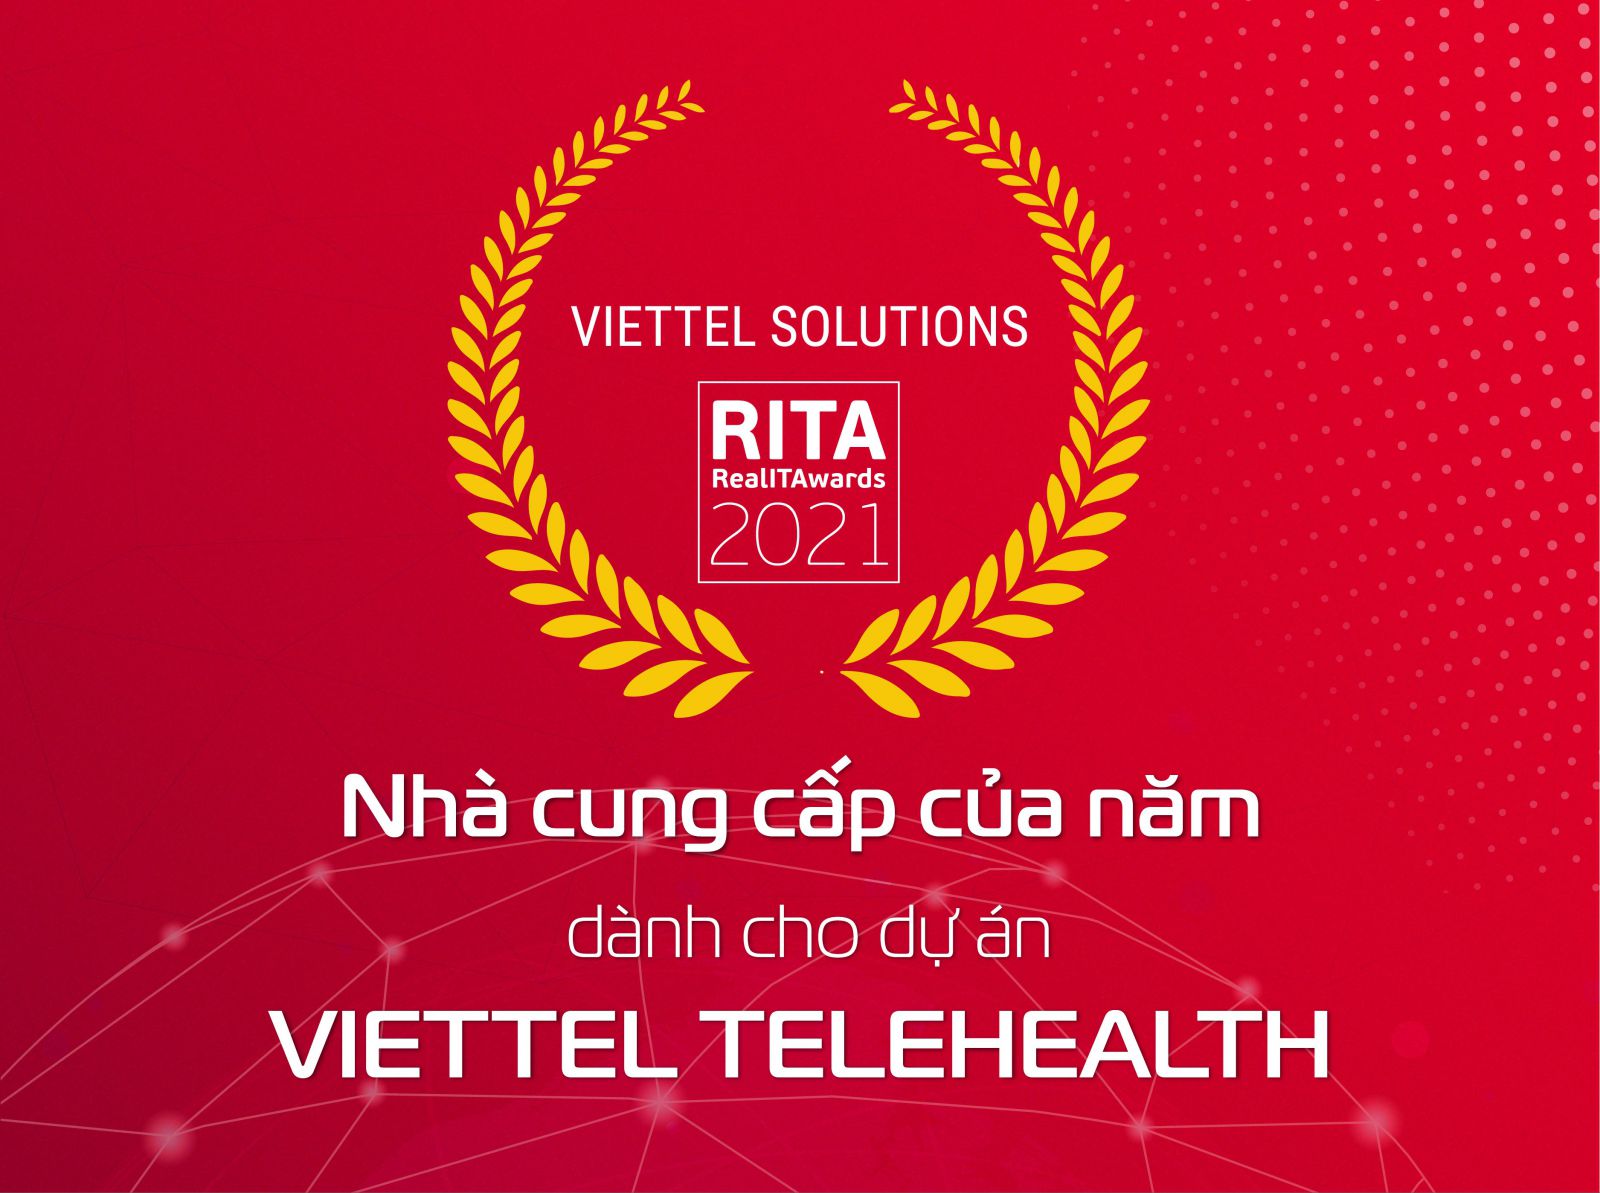 Viettel Solutions được vinh danh tại giải thưởng này.